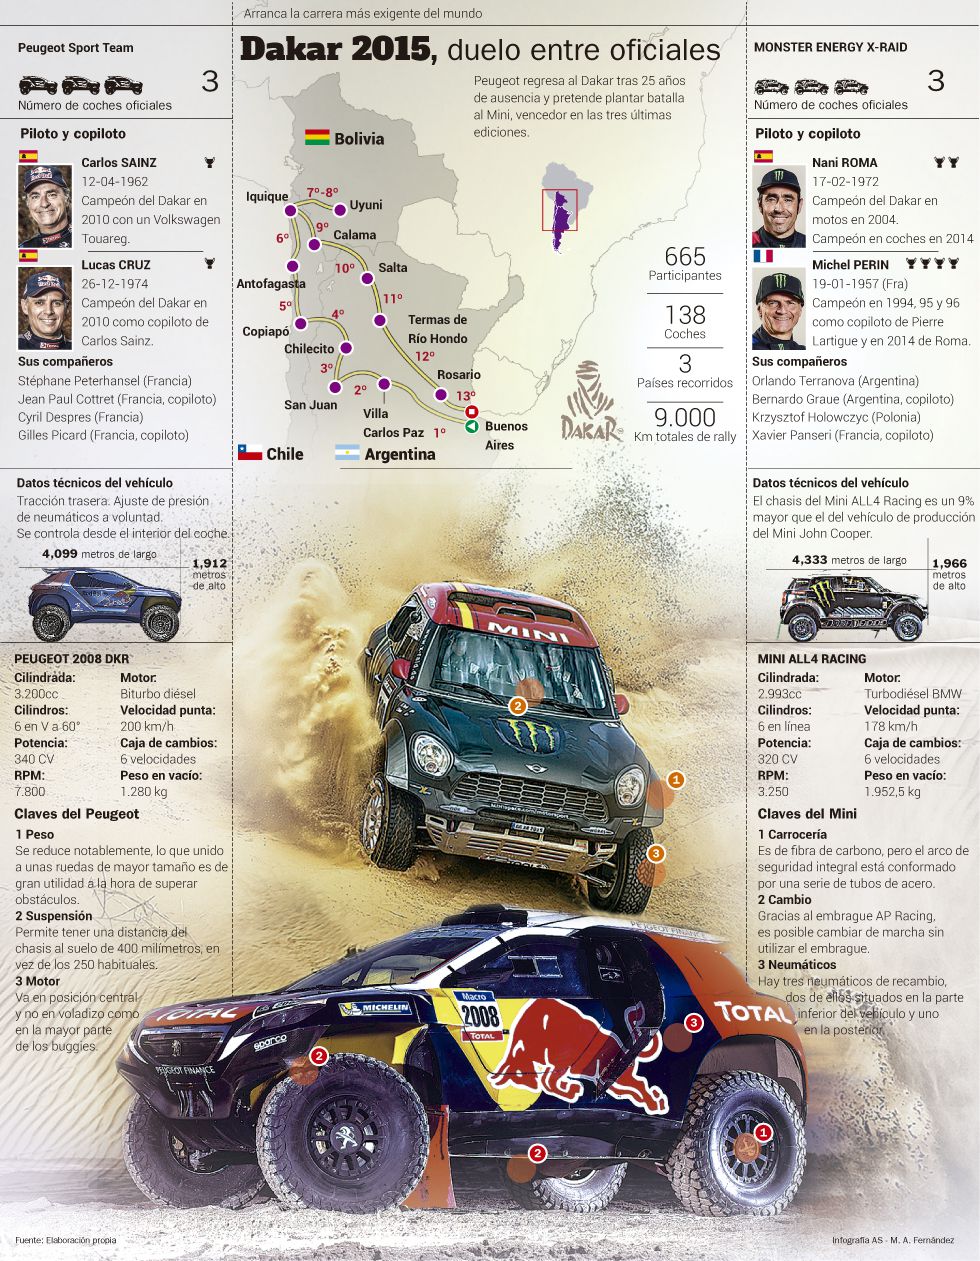 Rally Dakar 2015 (coches) 1420242418_060862_1420242644_noticia_grande